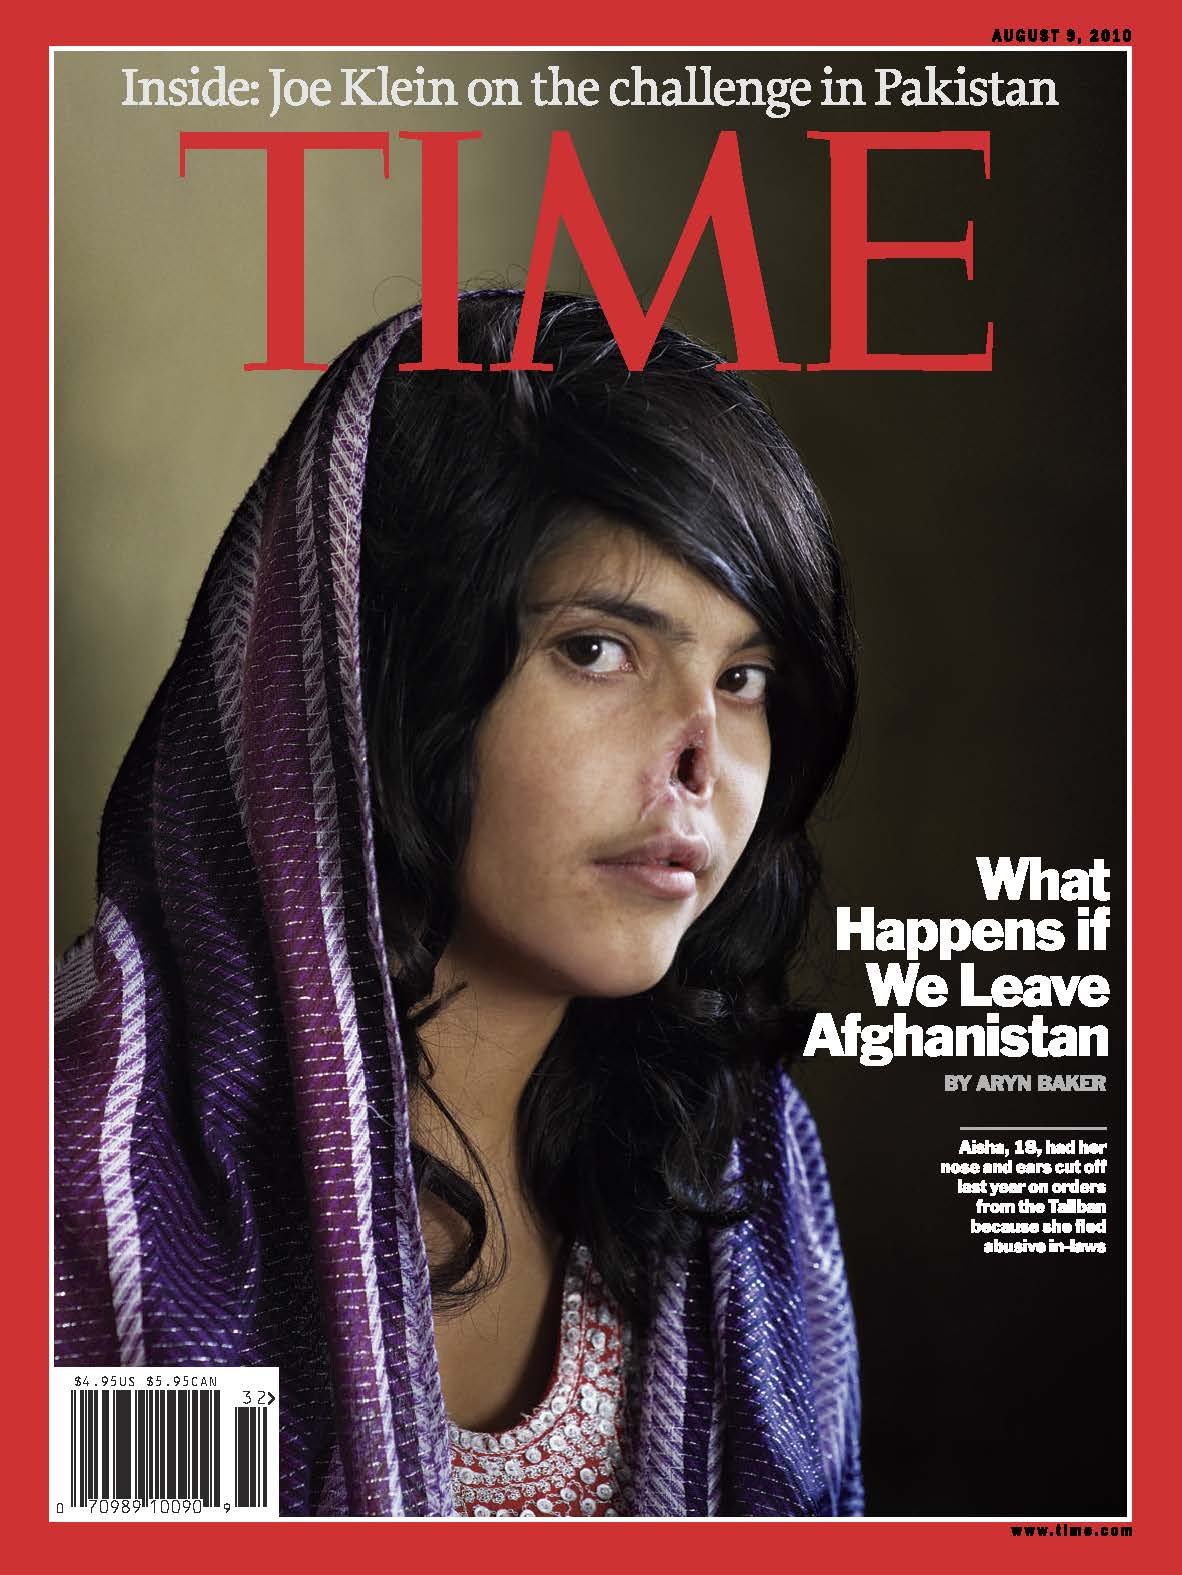 TIME_Jodi-Bieber_Aisha_Afghanistan_COVER_2010.jpg